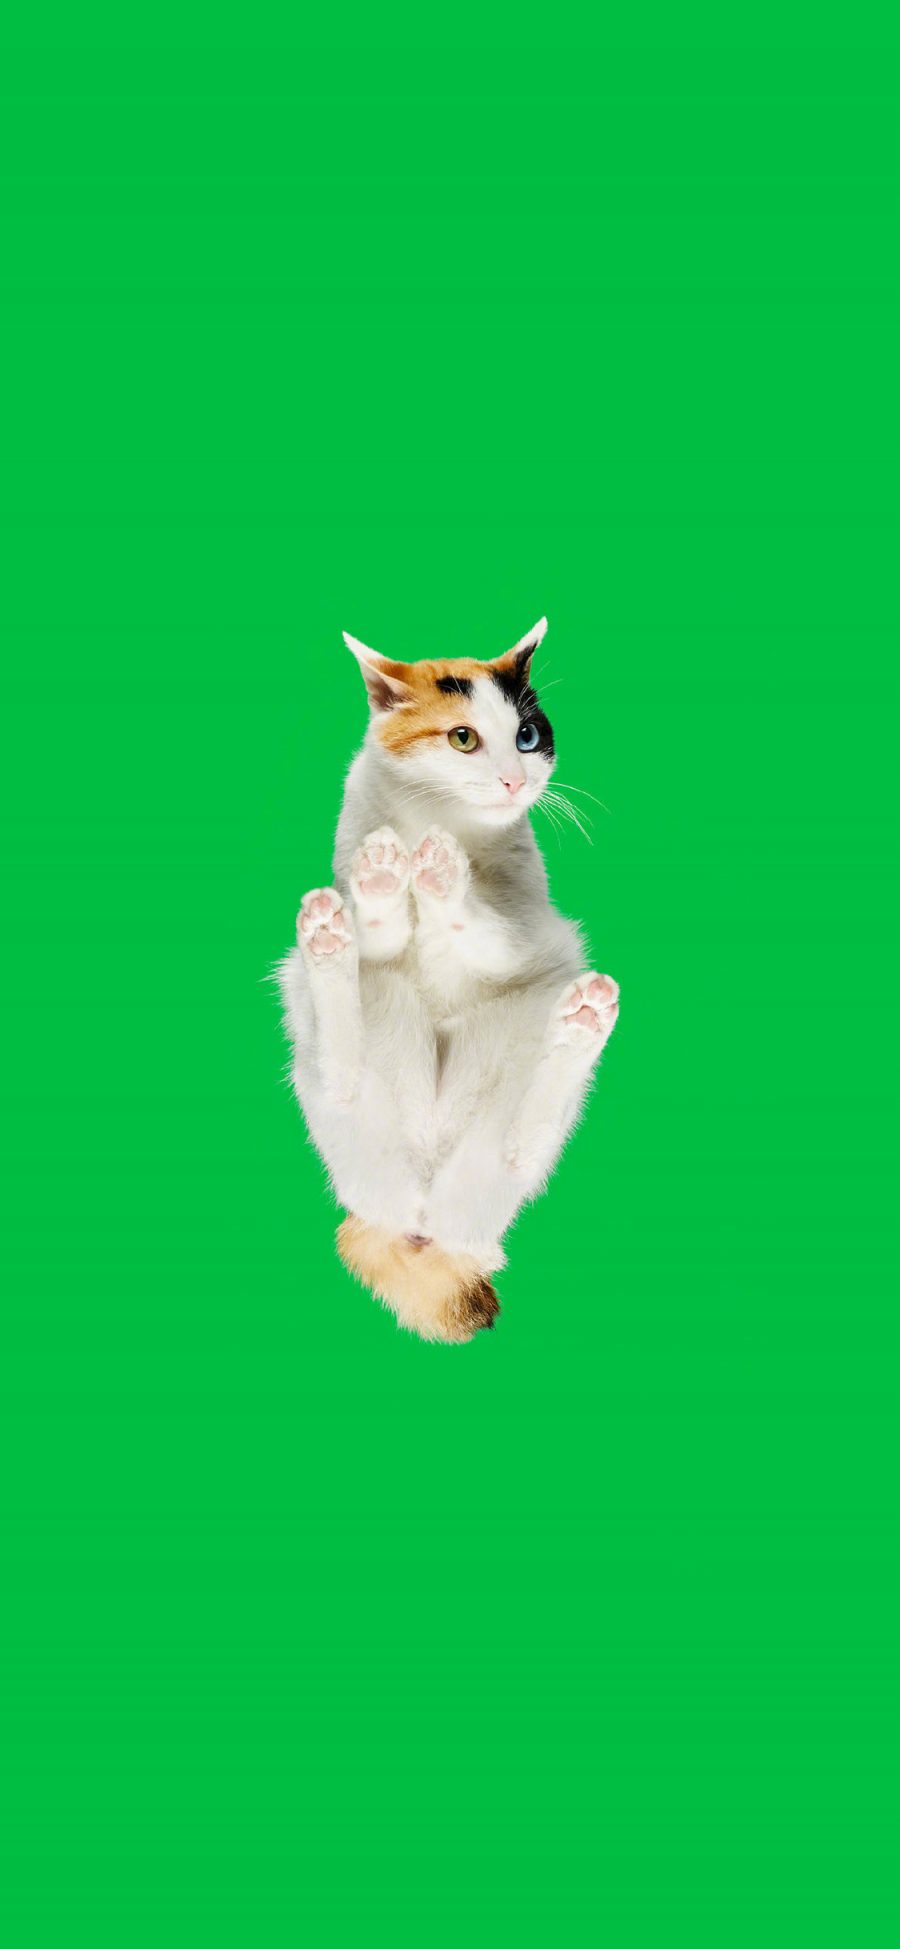 [2436×1125]猫咪 喵星人 宠物 绿色 仰视 苹果手机壁纸图片